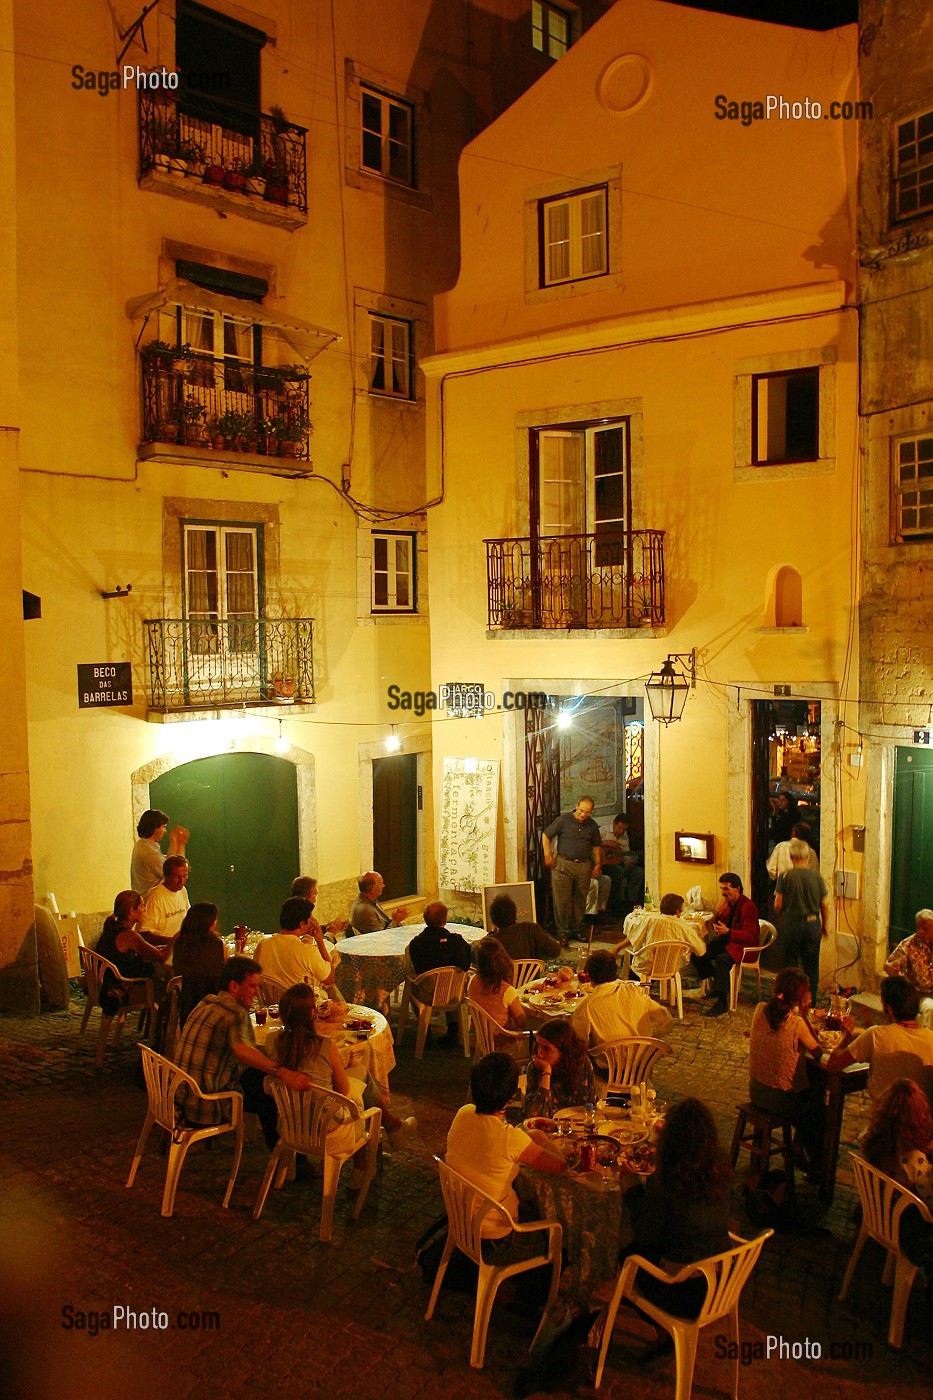 CAFE DE FADO VADIO, FADO POPULAIRE PRATIQUE PAR TOUS, QUARTIER DE L'ALFAMA, LISBONNE, PORTUGAL 